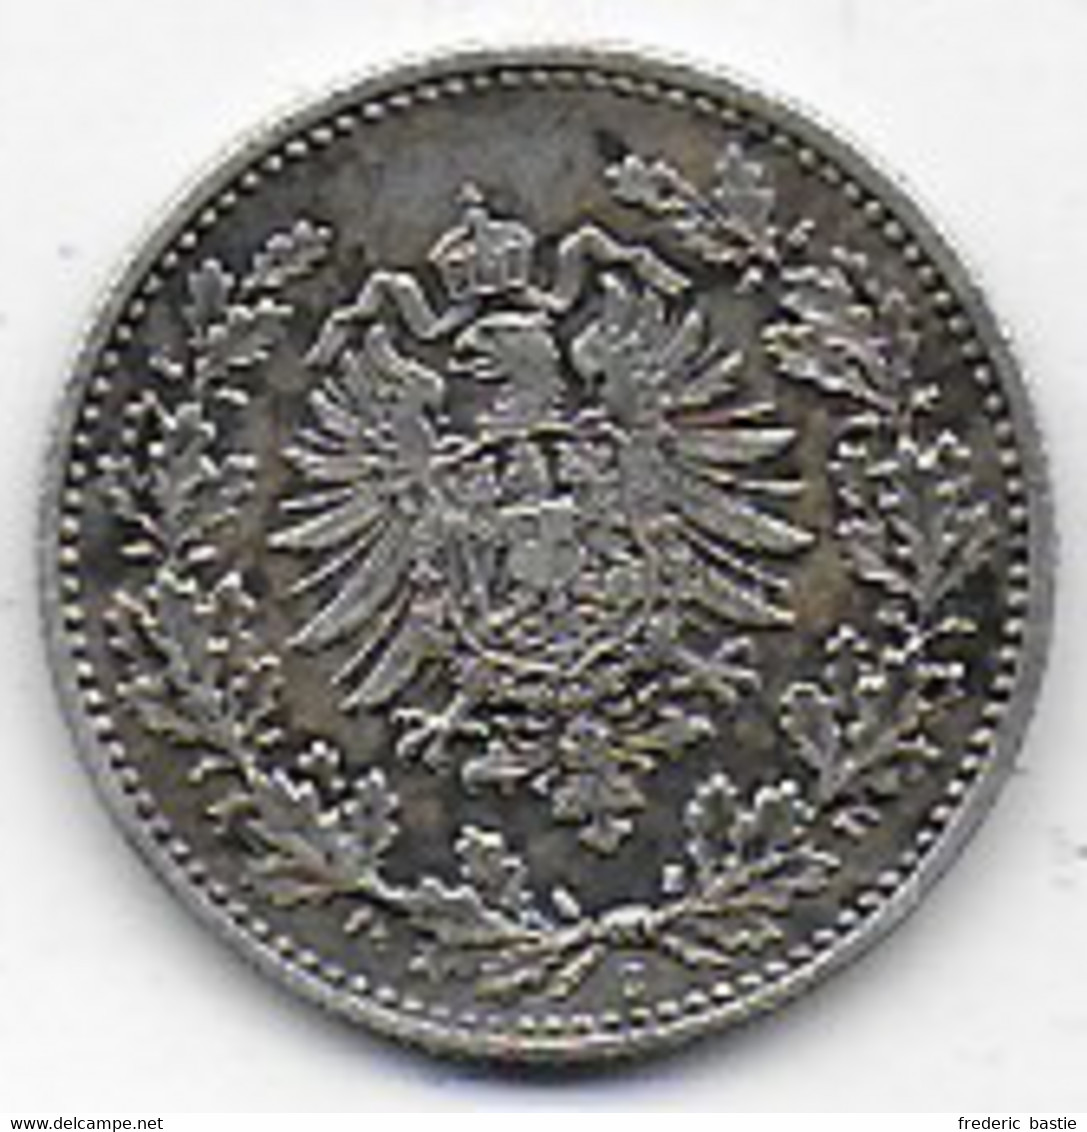 ALLEMAGNE  -   50 Pf.  1877 C - 50 Pfennig